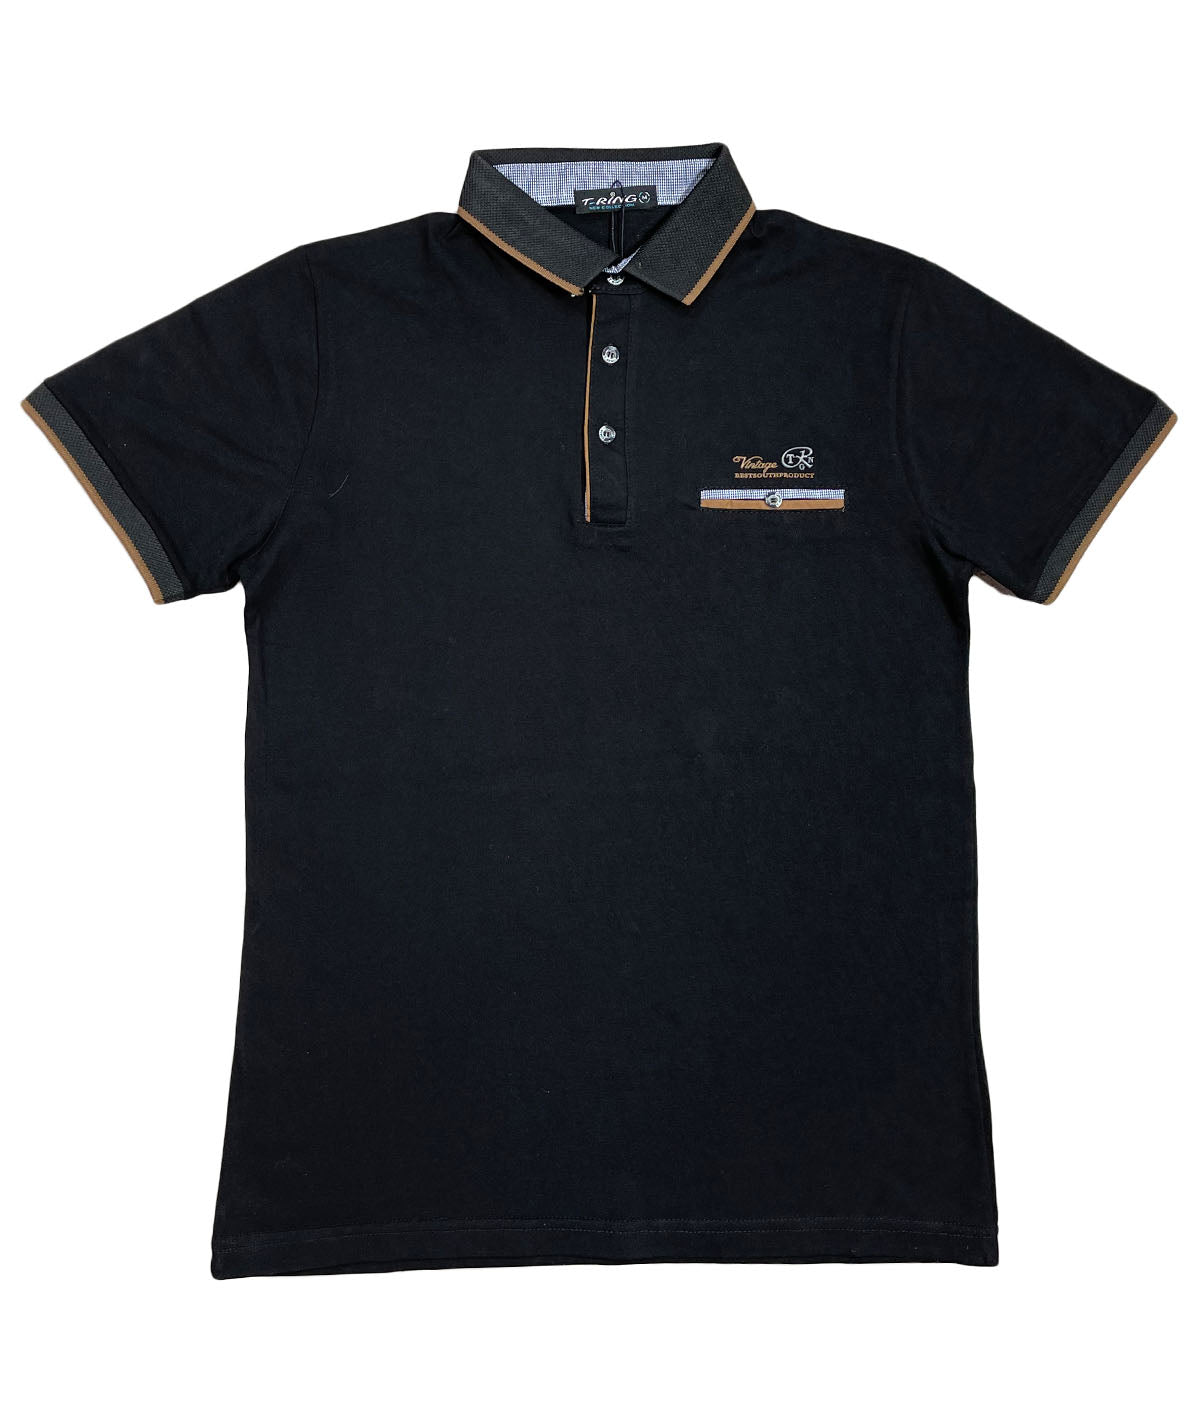 Ανδρική μπλούζα polo “T-RING” (6590674600100)